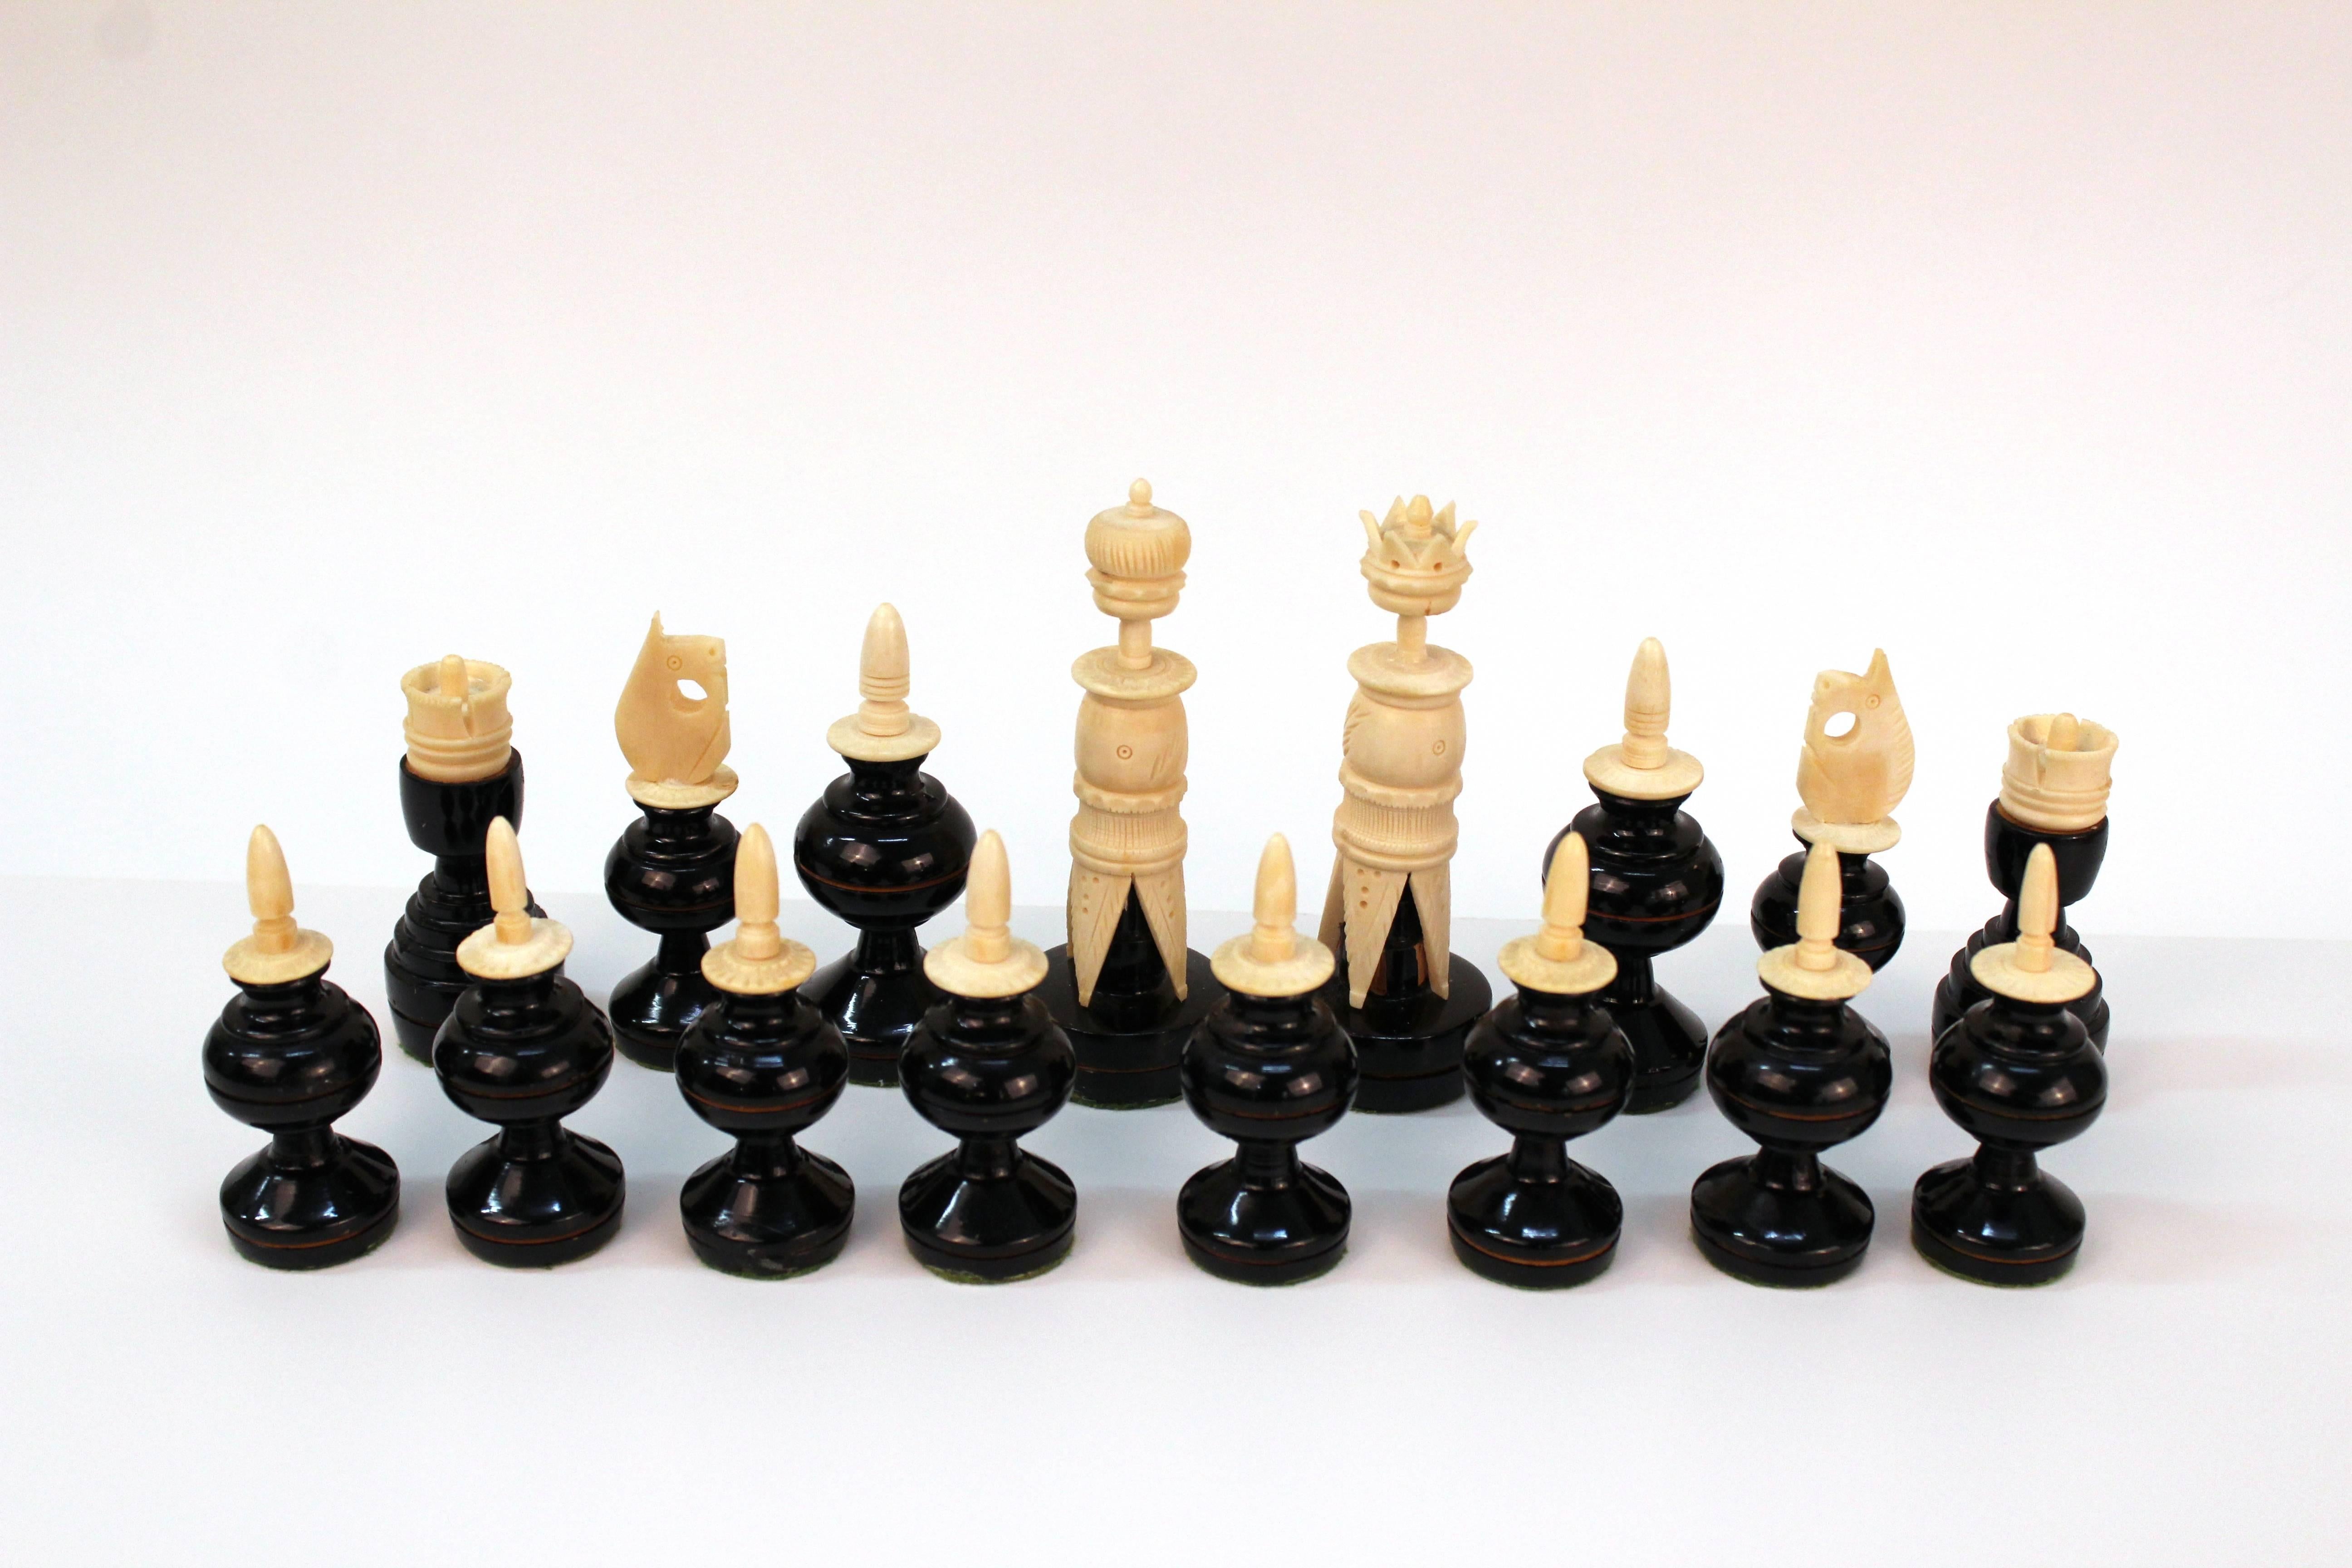 Italian Pietra Dura Chess Board with Semi-Precious Stone 1